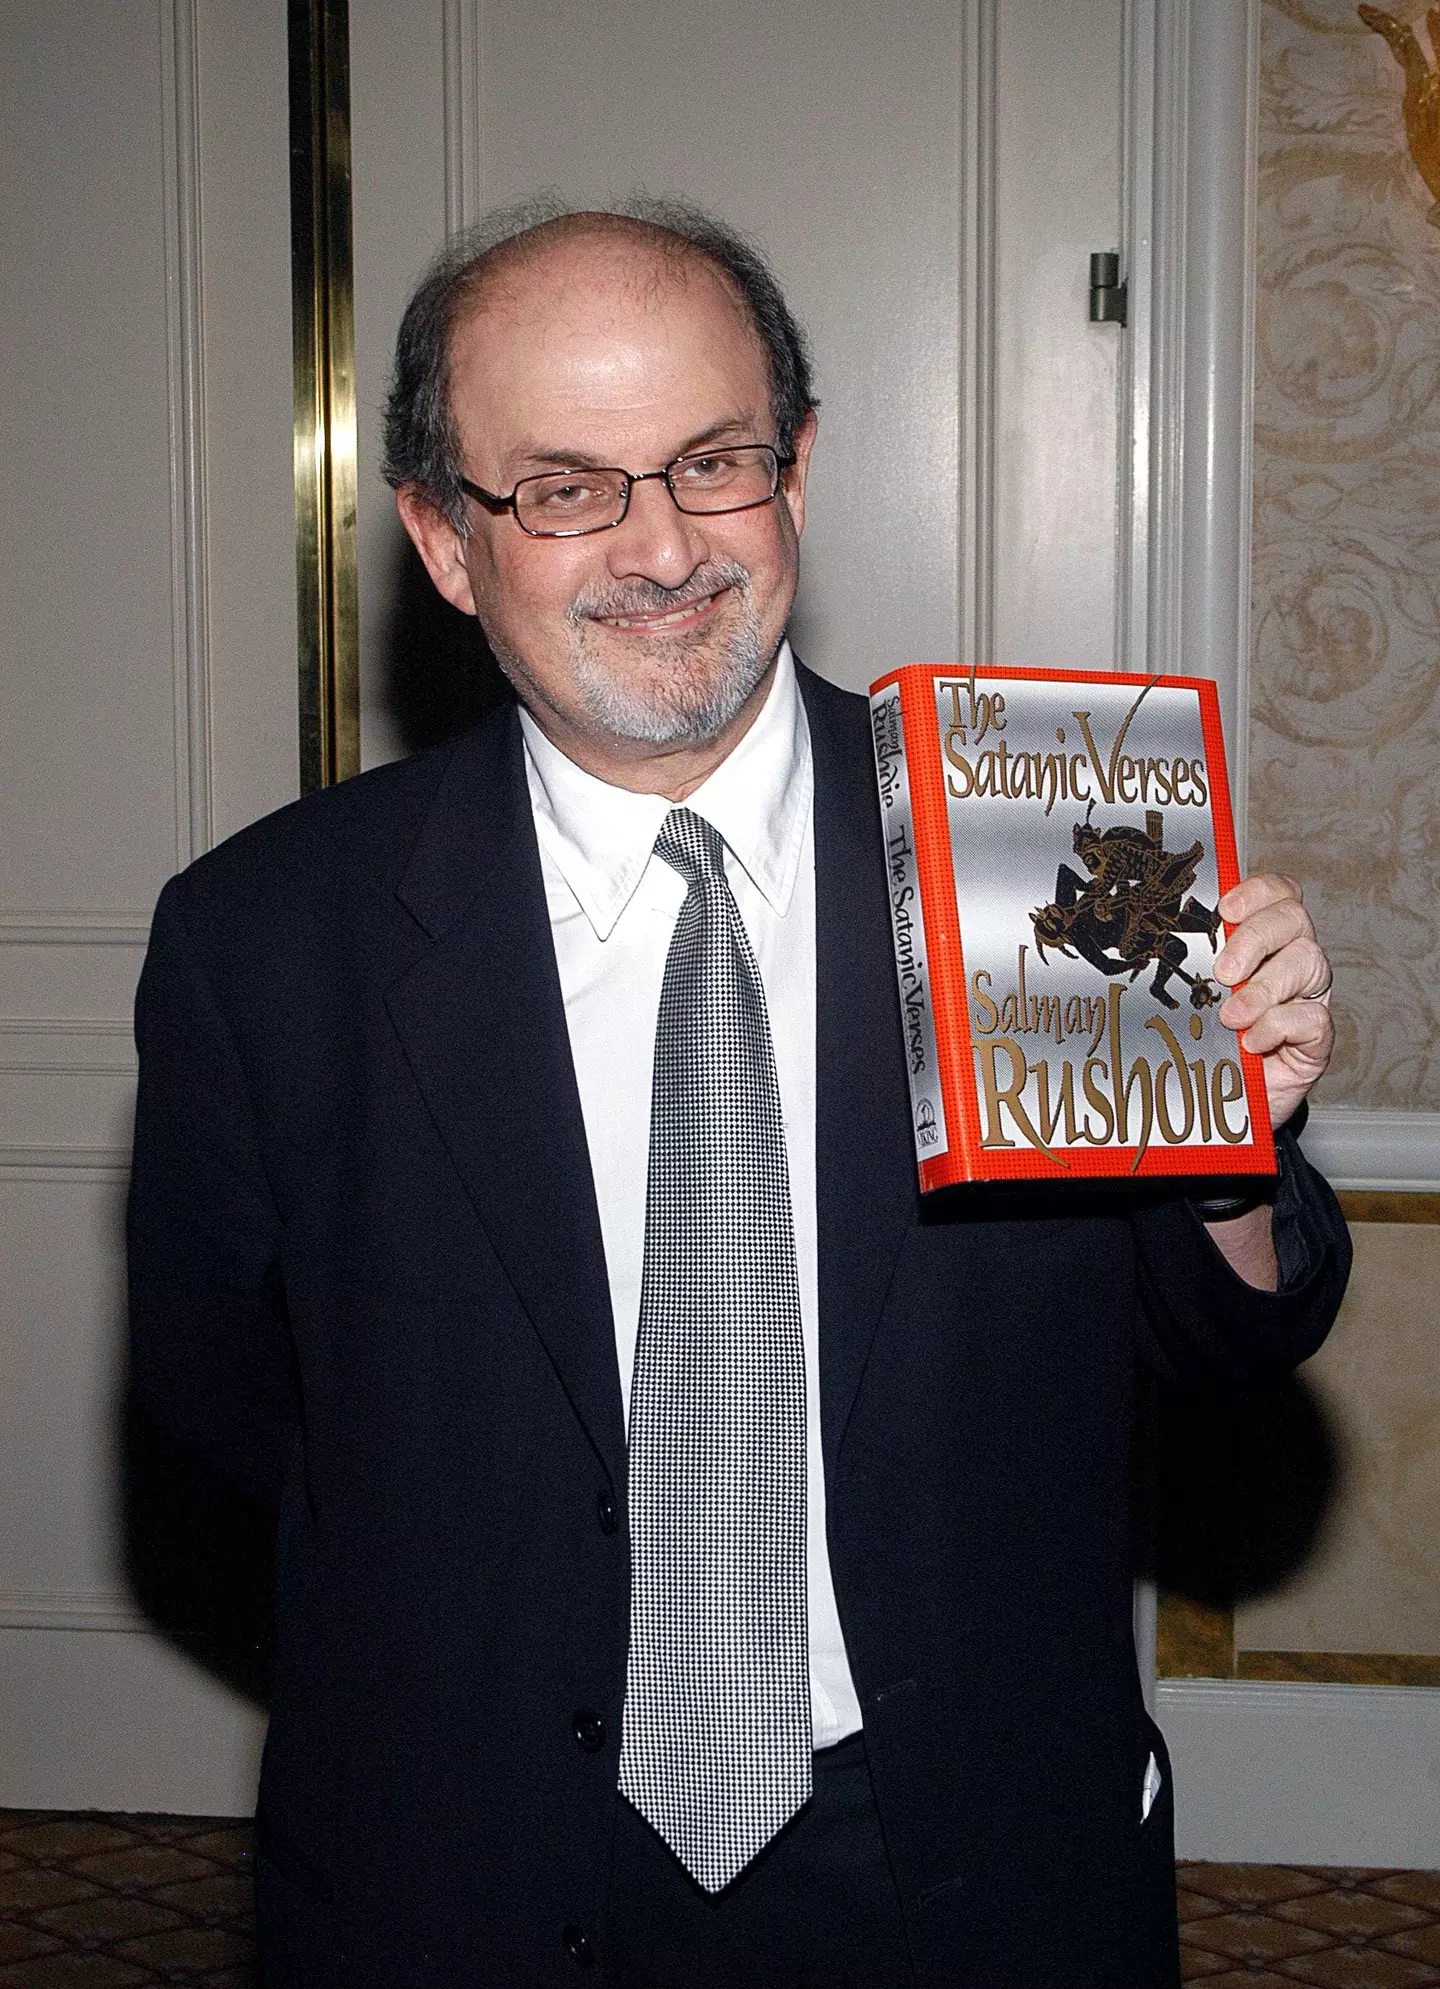 Salman Rushdie and his book 'The Satanic Verses'.